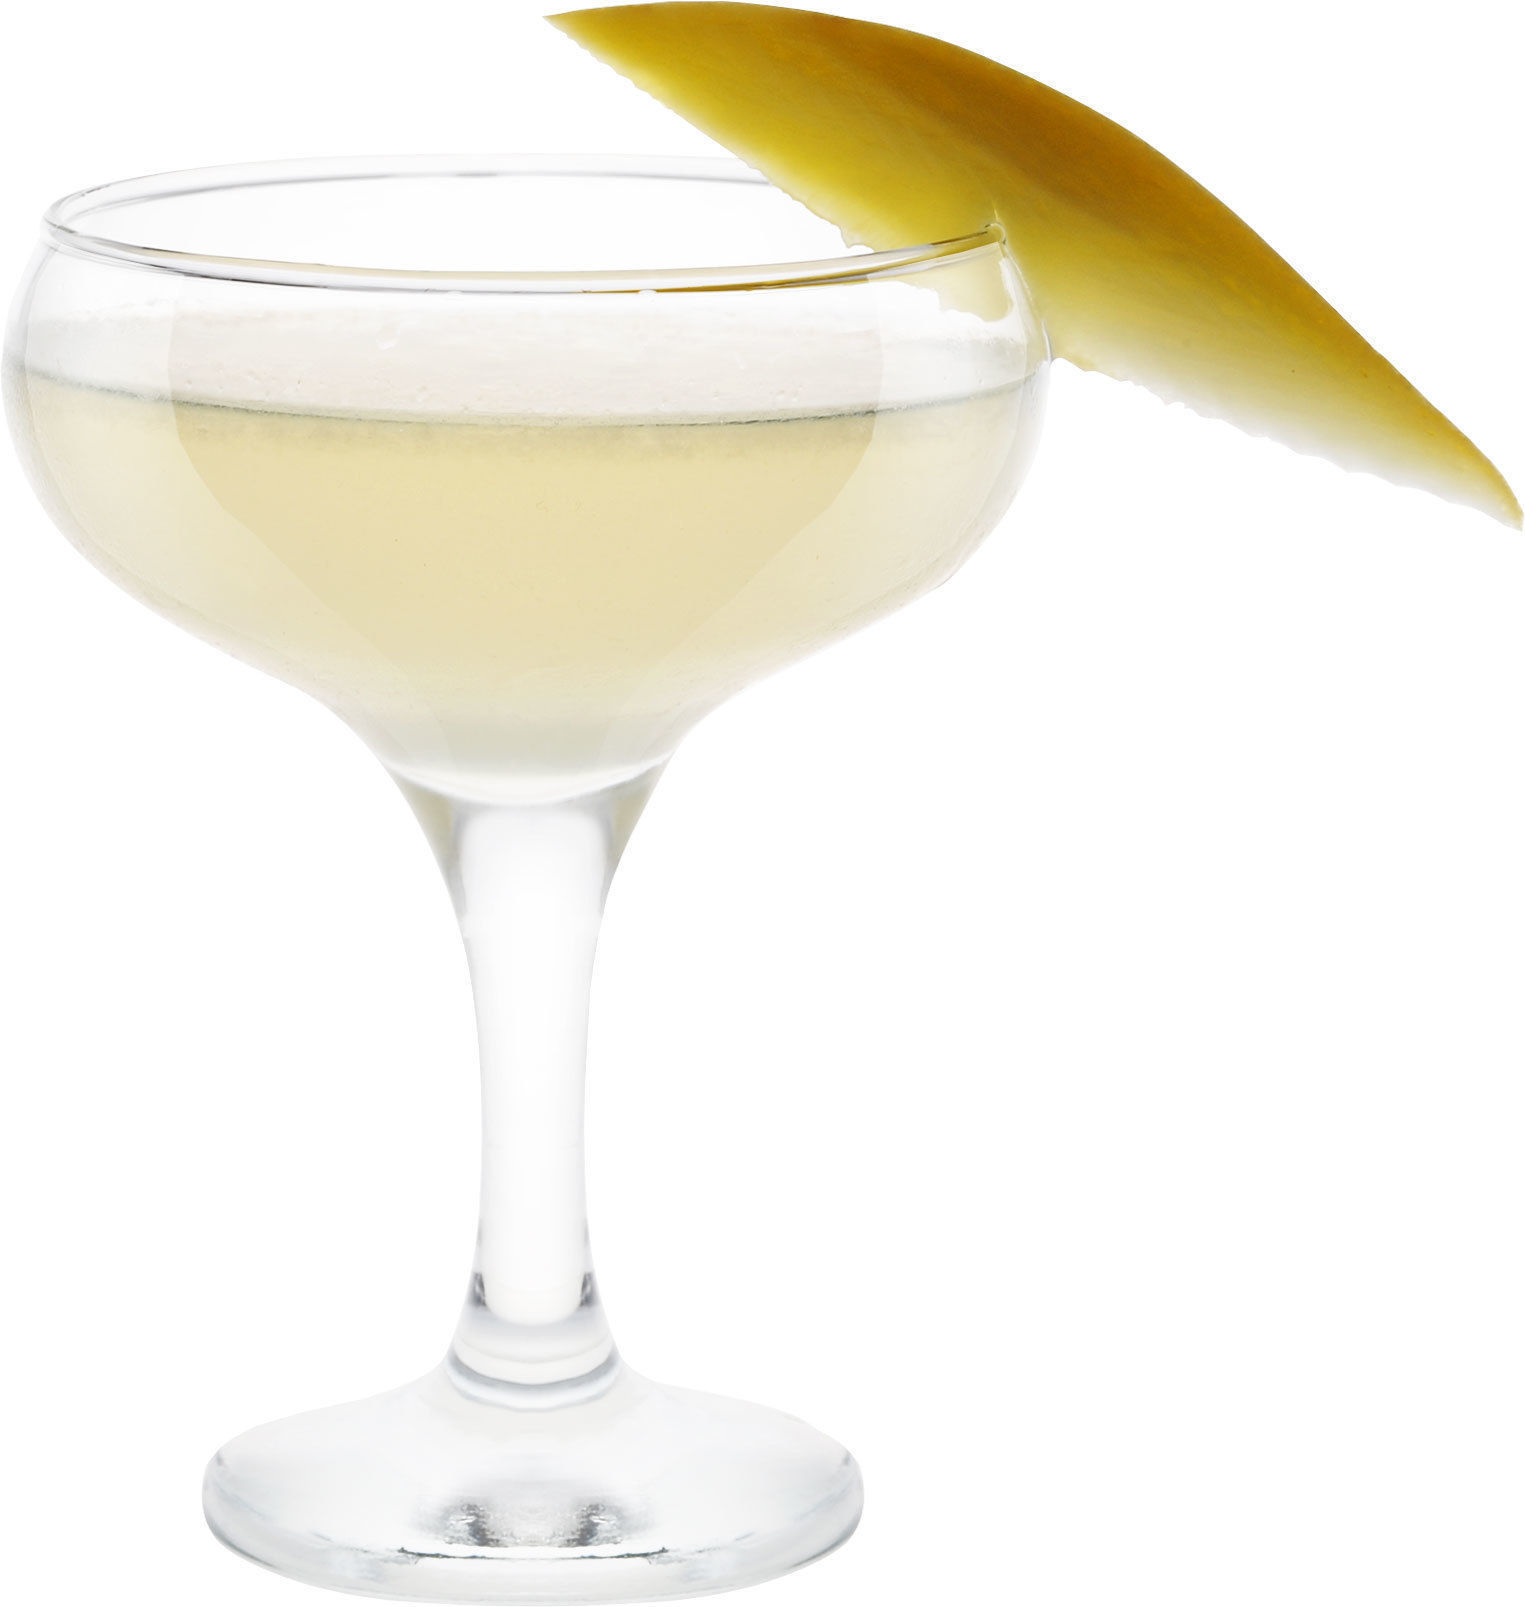 Comment préparer le cocktail Daiquiri mangue